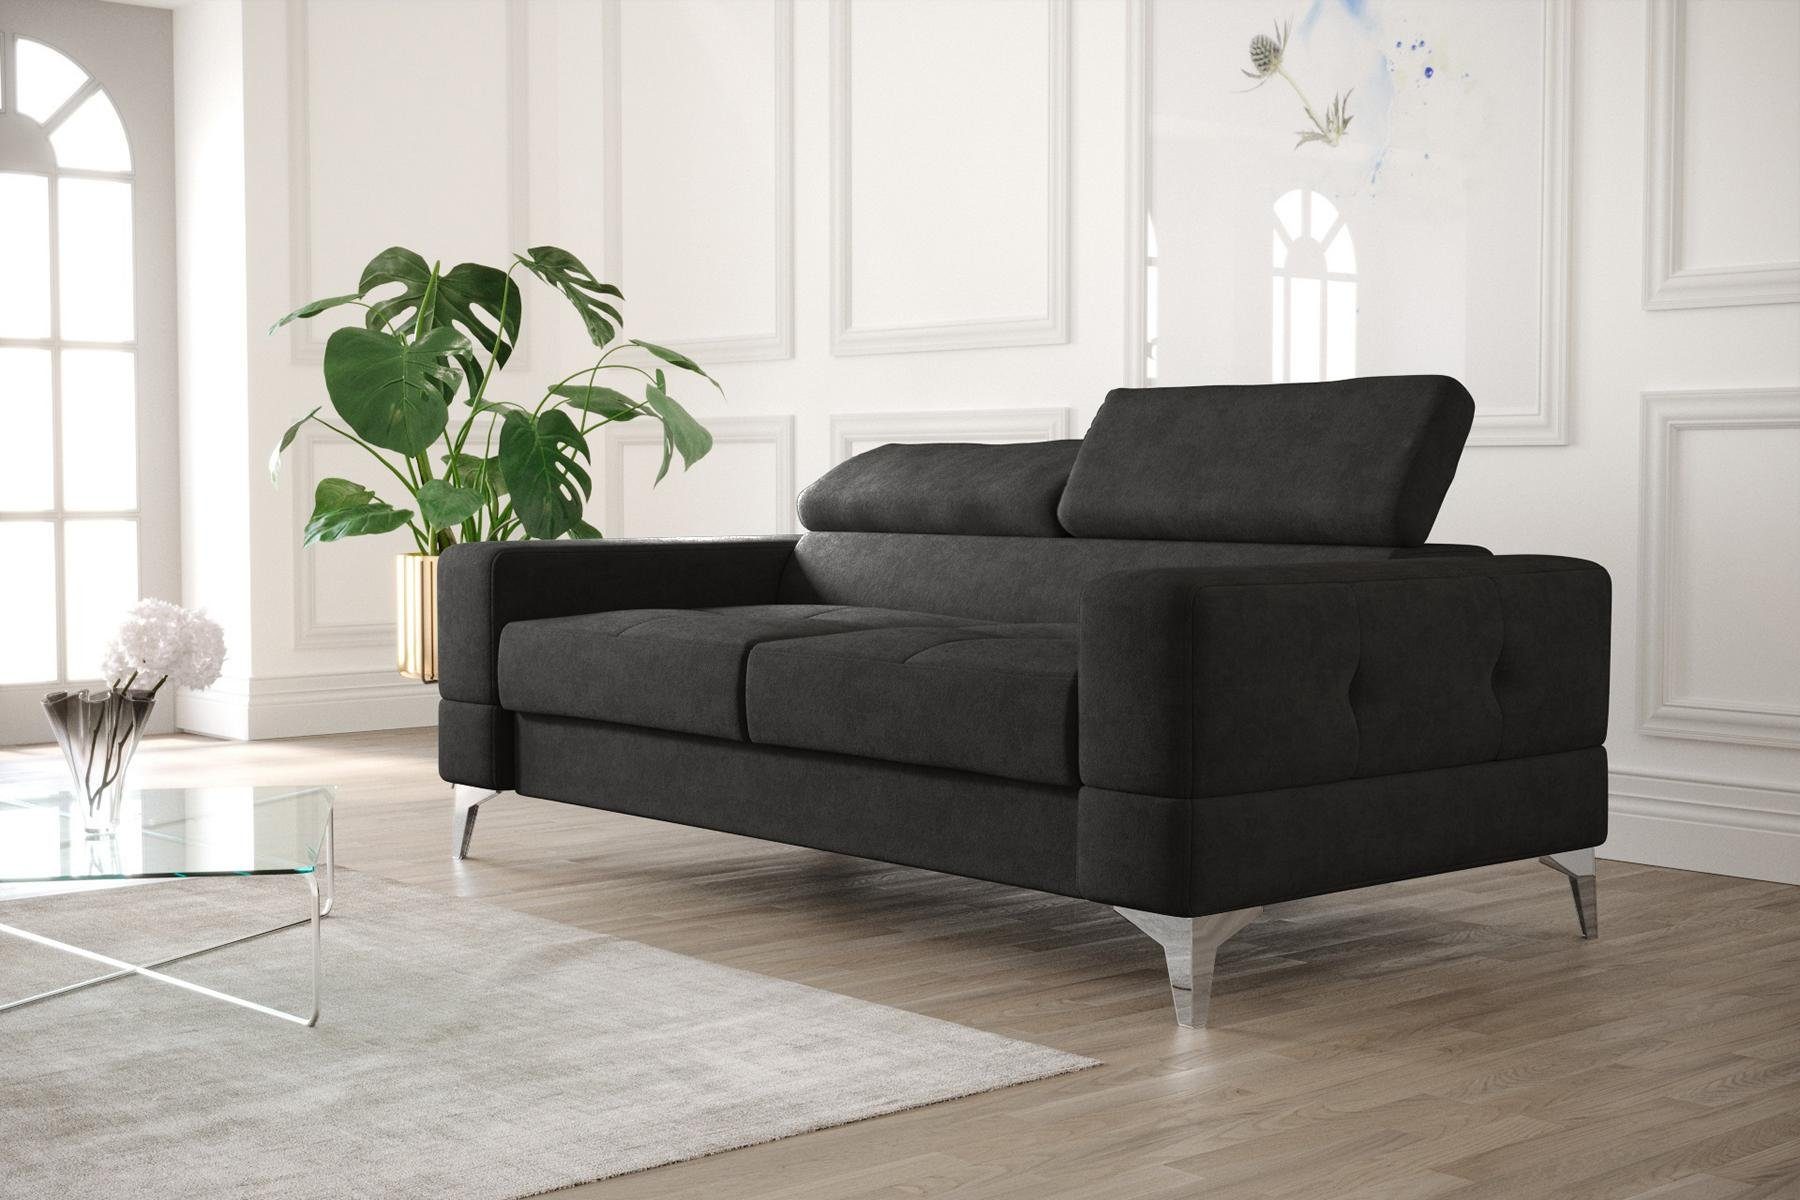 JVmoebel Zweisitzer Made Sofa Sitzmöbel, Couch Europe Schwarzer Moderne in Wohnzimmer Luxus